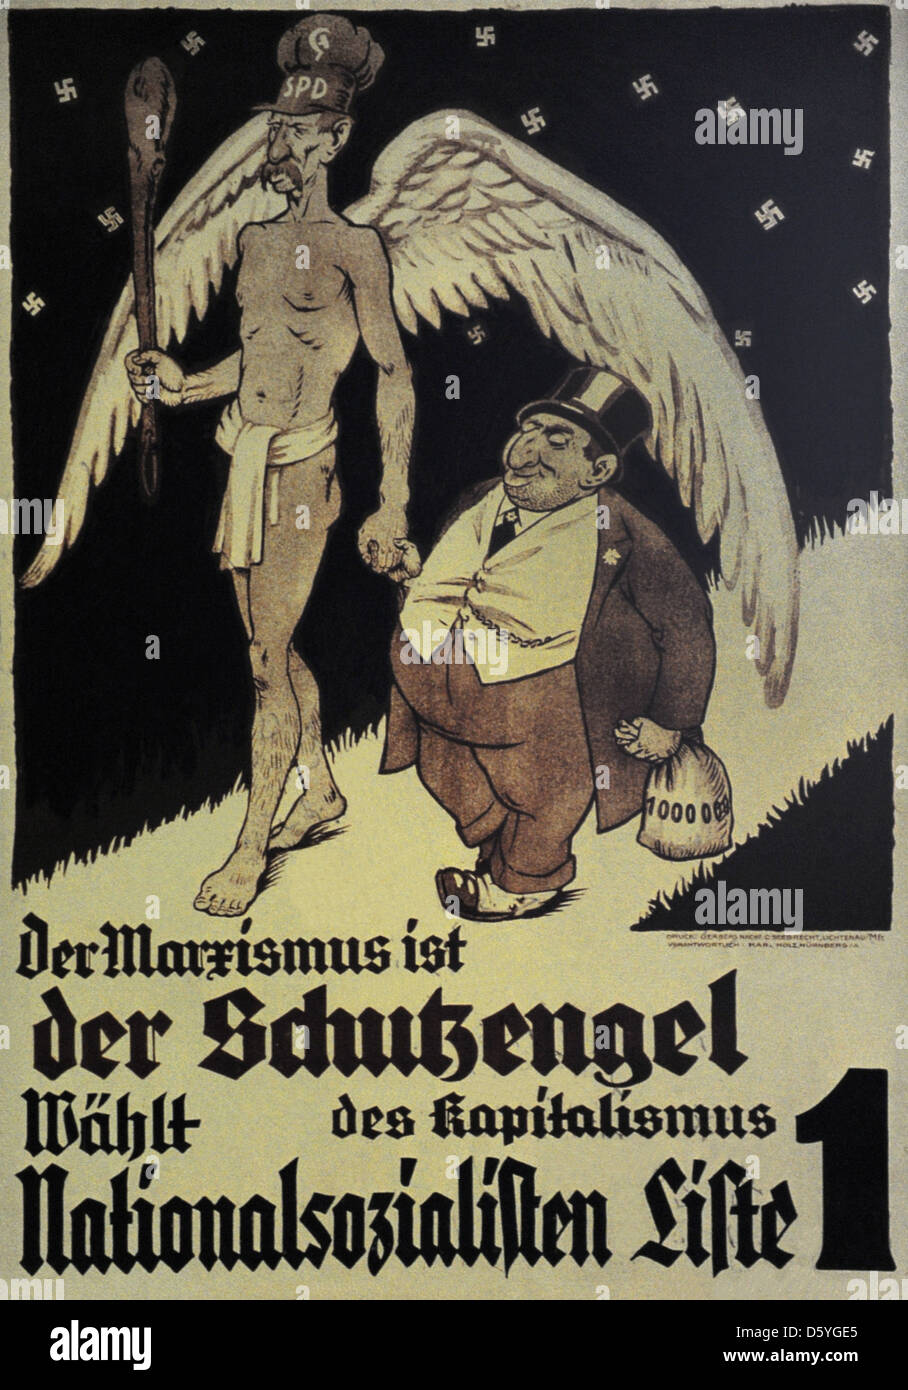 Alemania. NSDAP cartel para la elección del Reichstag. Noviembre, 1932. El marxismo es el ángel guardián del capitalismo. Foto de stock